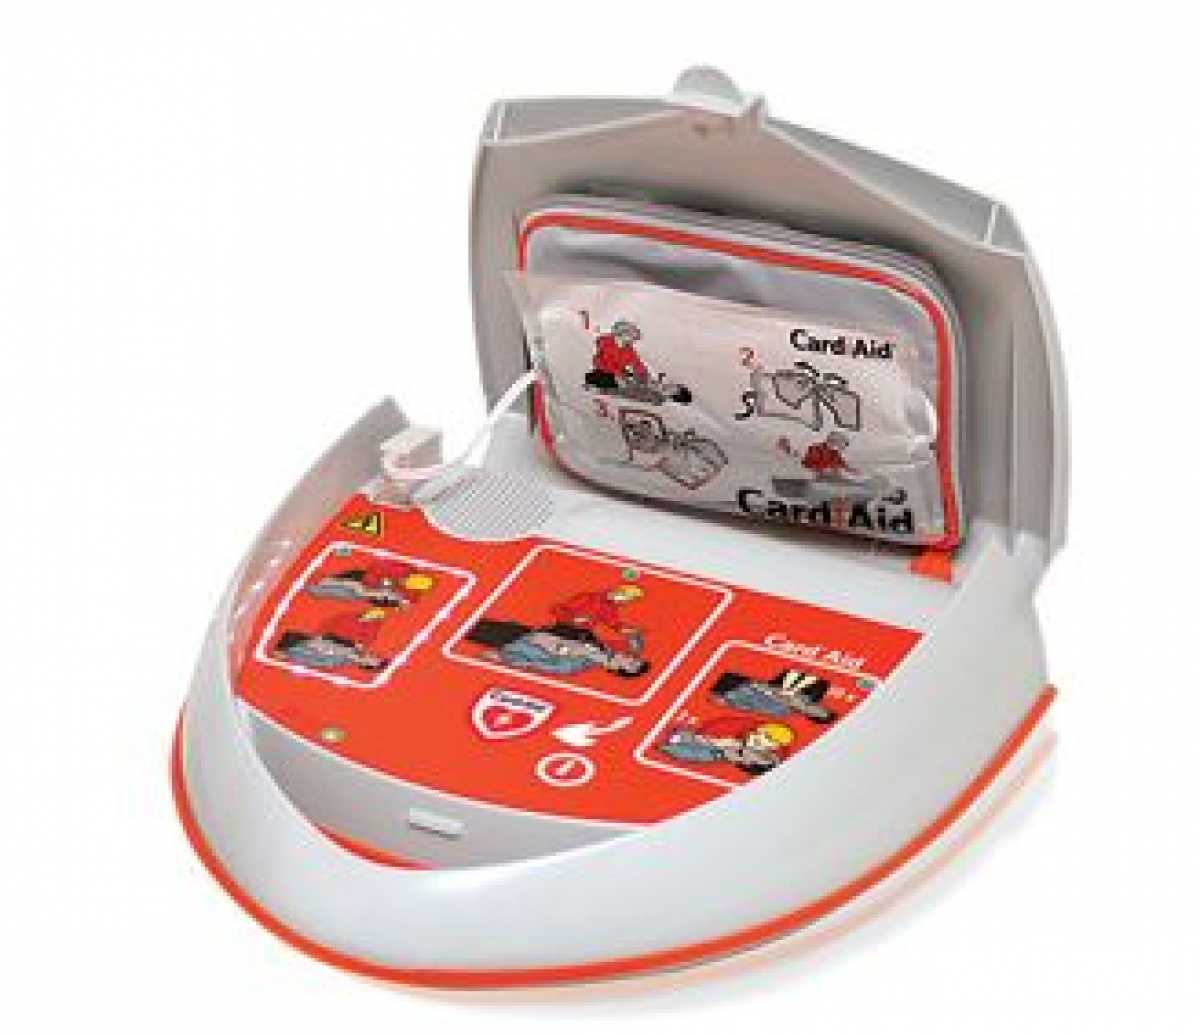 Semi Automatic Defibrillator